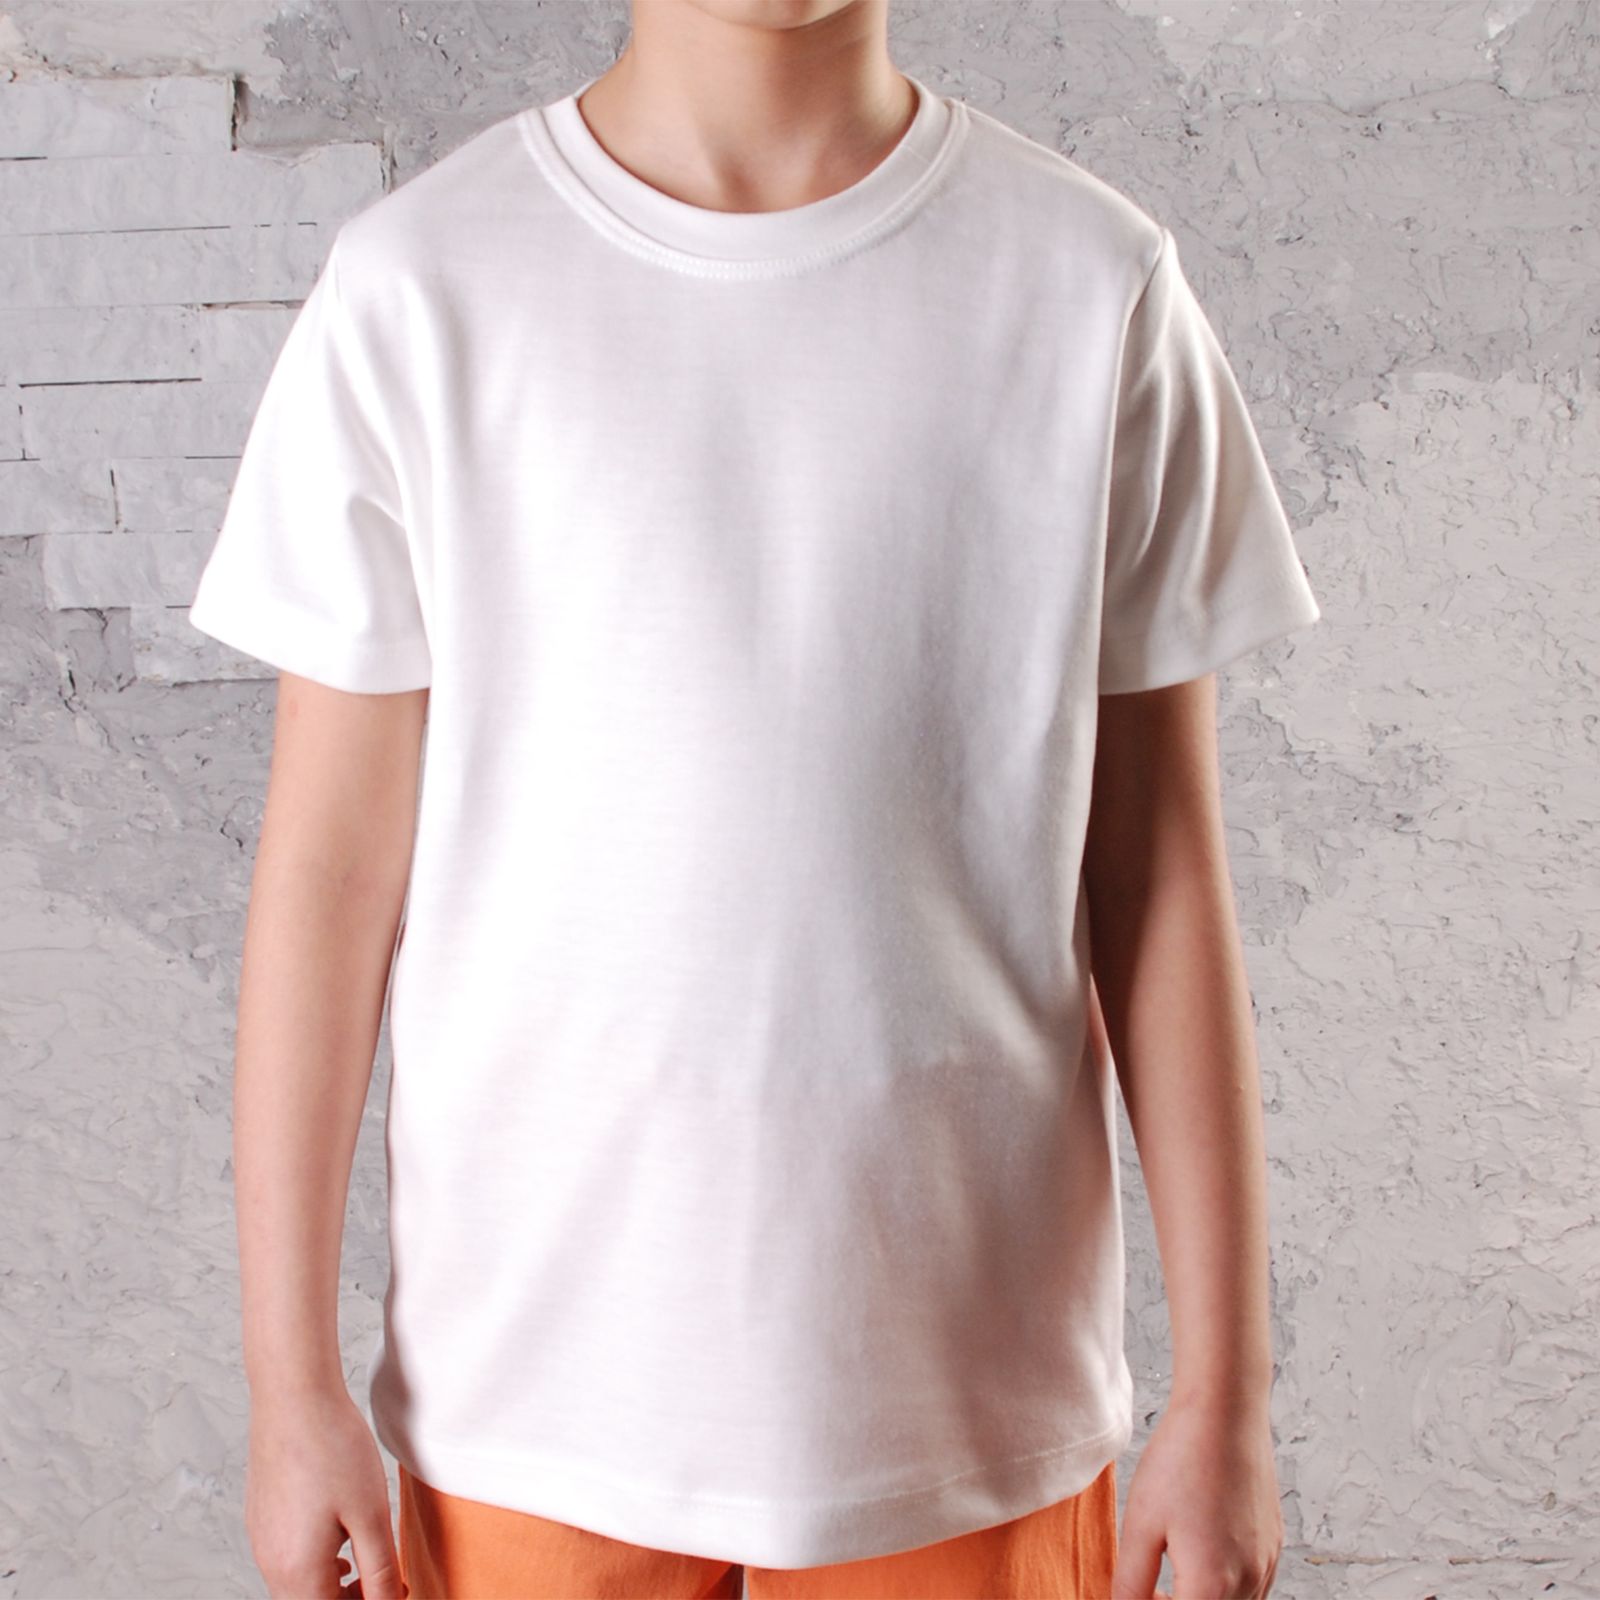 ست پیراهن و تی شرت پسرانه قرآنی مدل 211604PNK -  - 6